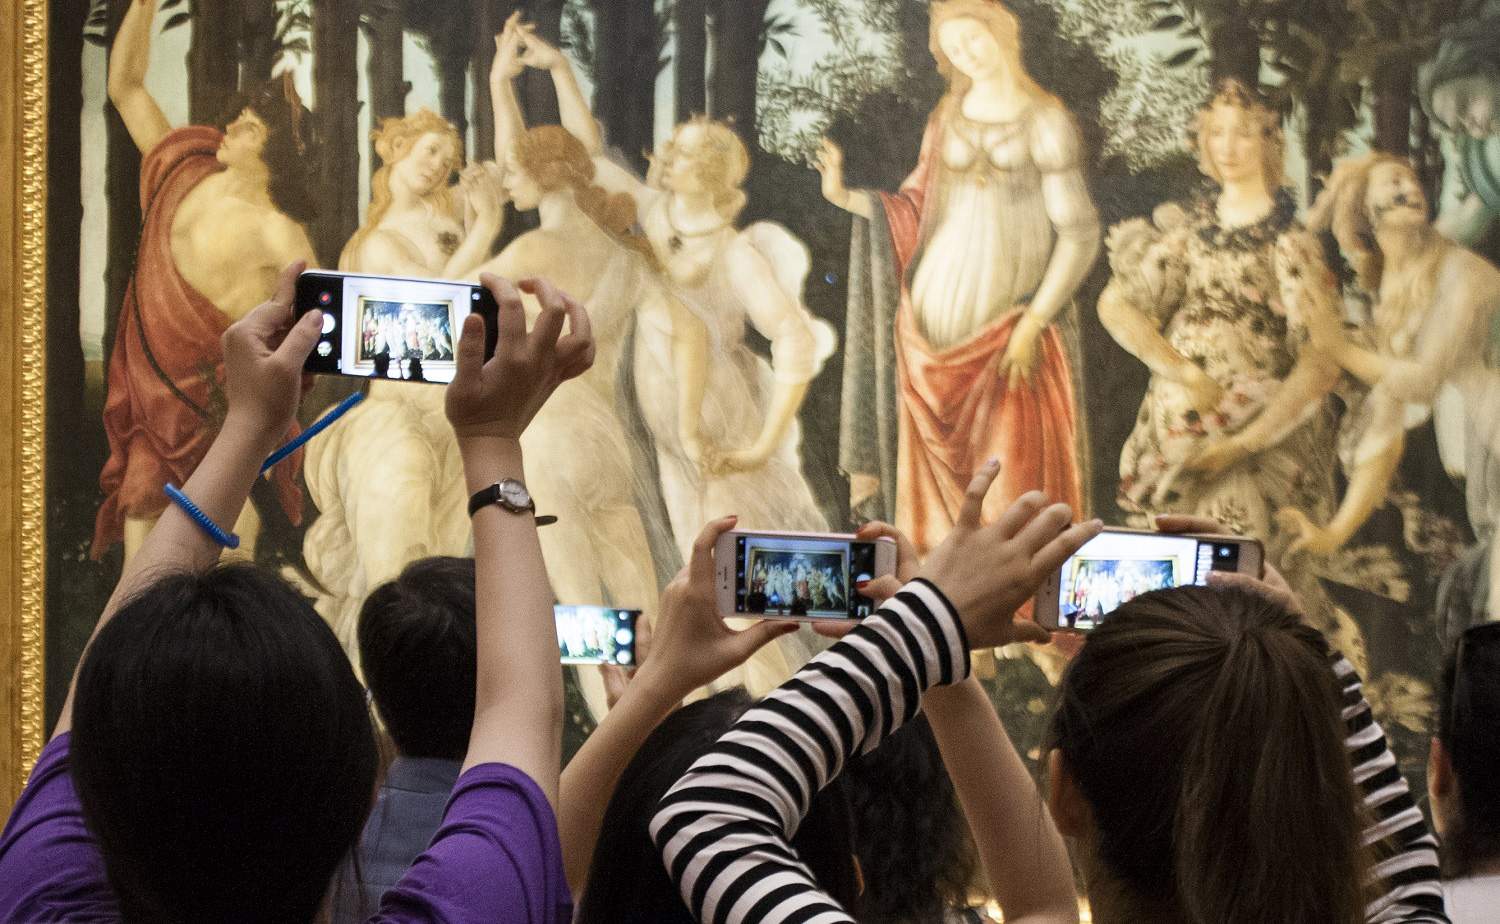 I turisti che assaltano gli Uffizi sono ora al centro di una mostra, che si tiene proprio agli Uffizi